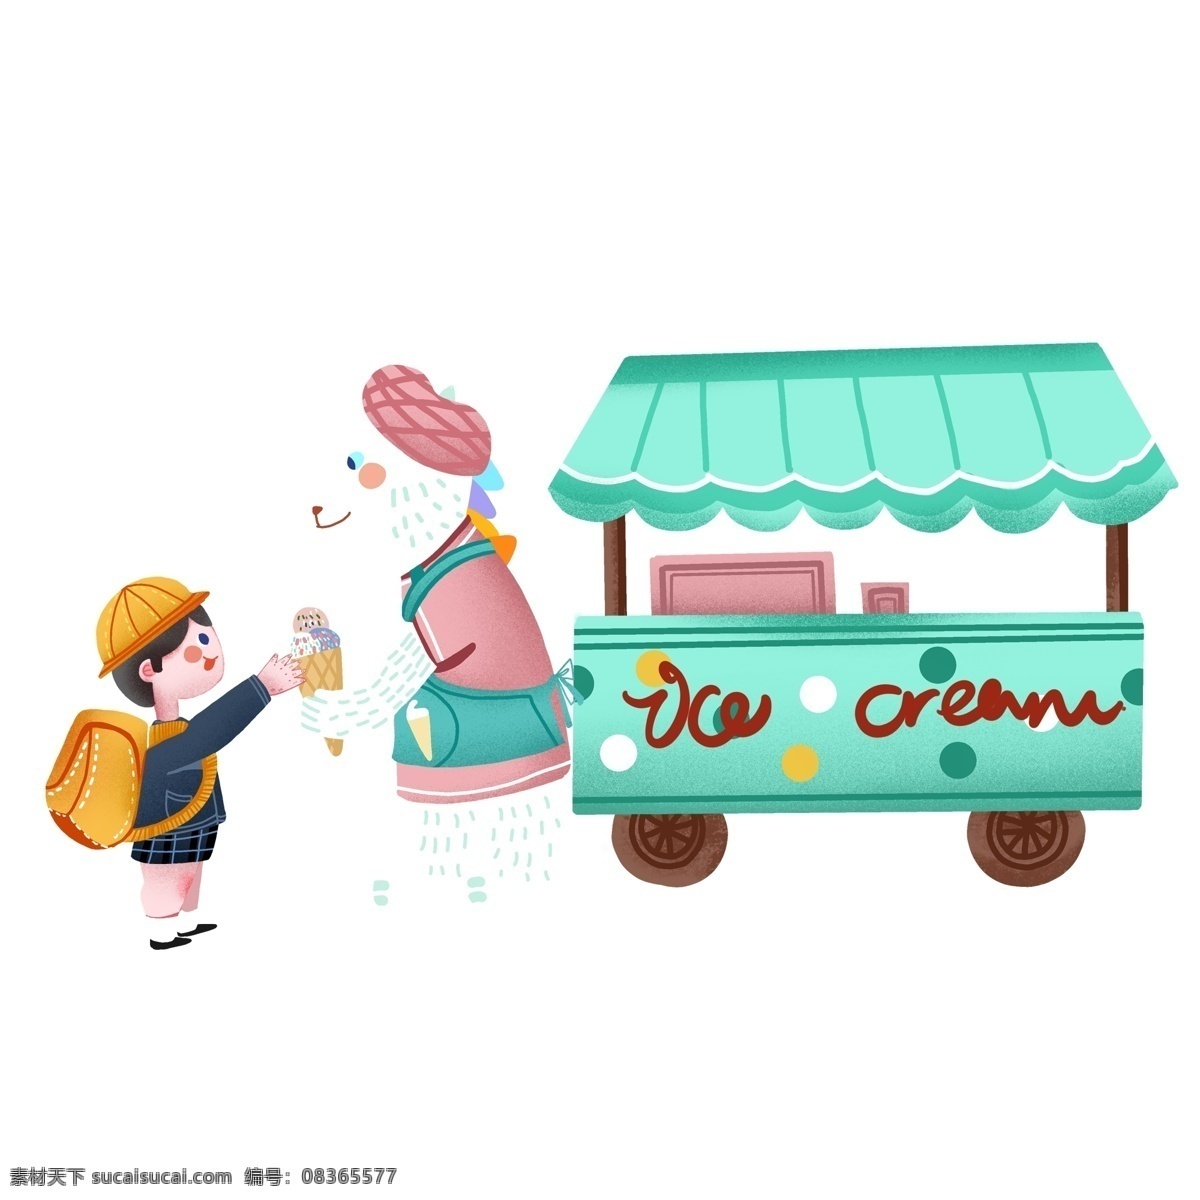 小 清新 买 冰激凌 场景 商用 元素 小清新 学生 小孩 插画设计 场景设计 儿童 幼儿园小孩 冰淇淋车 买冰淇淋